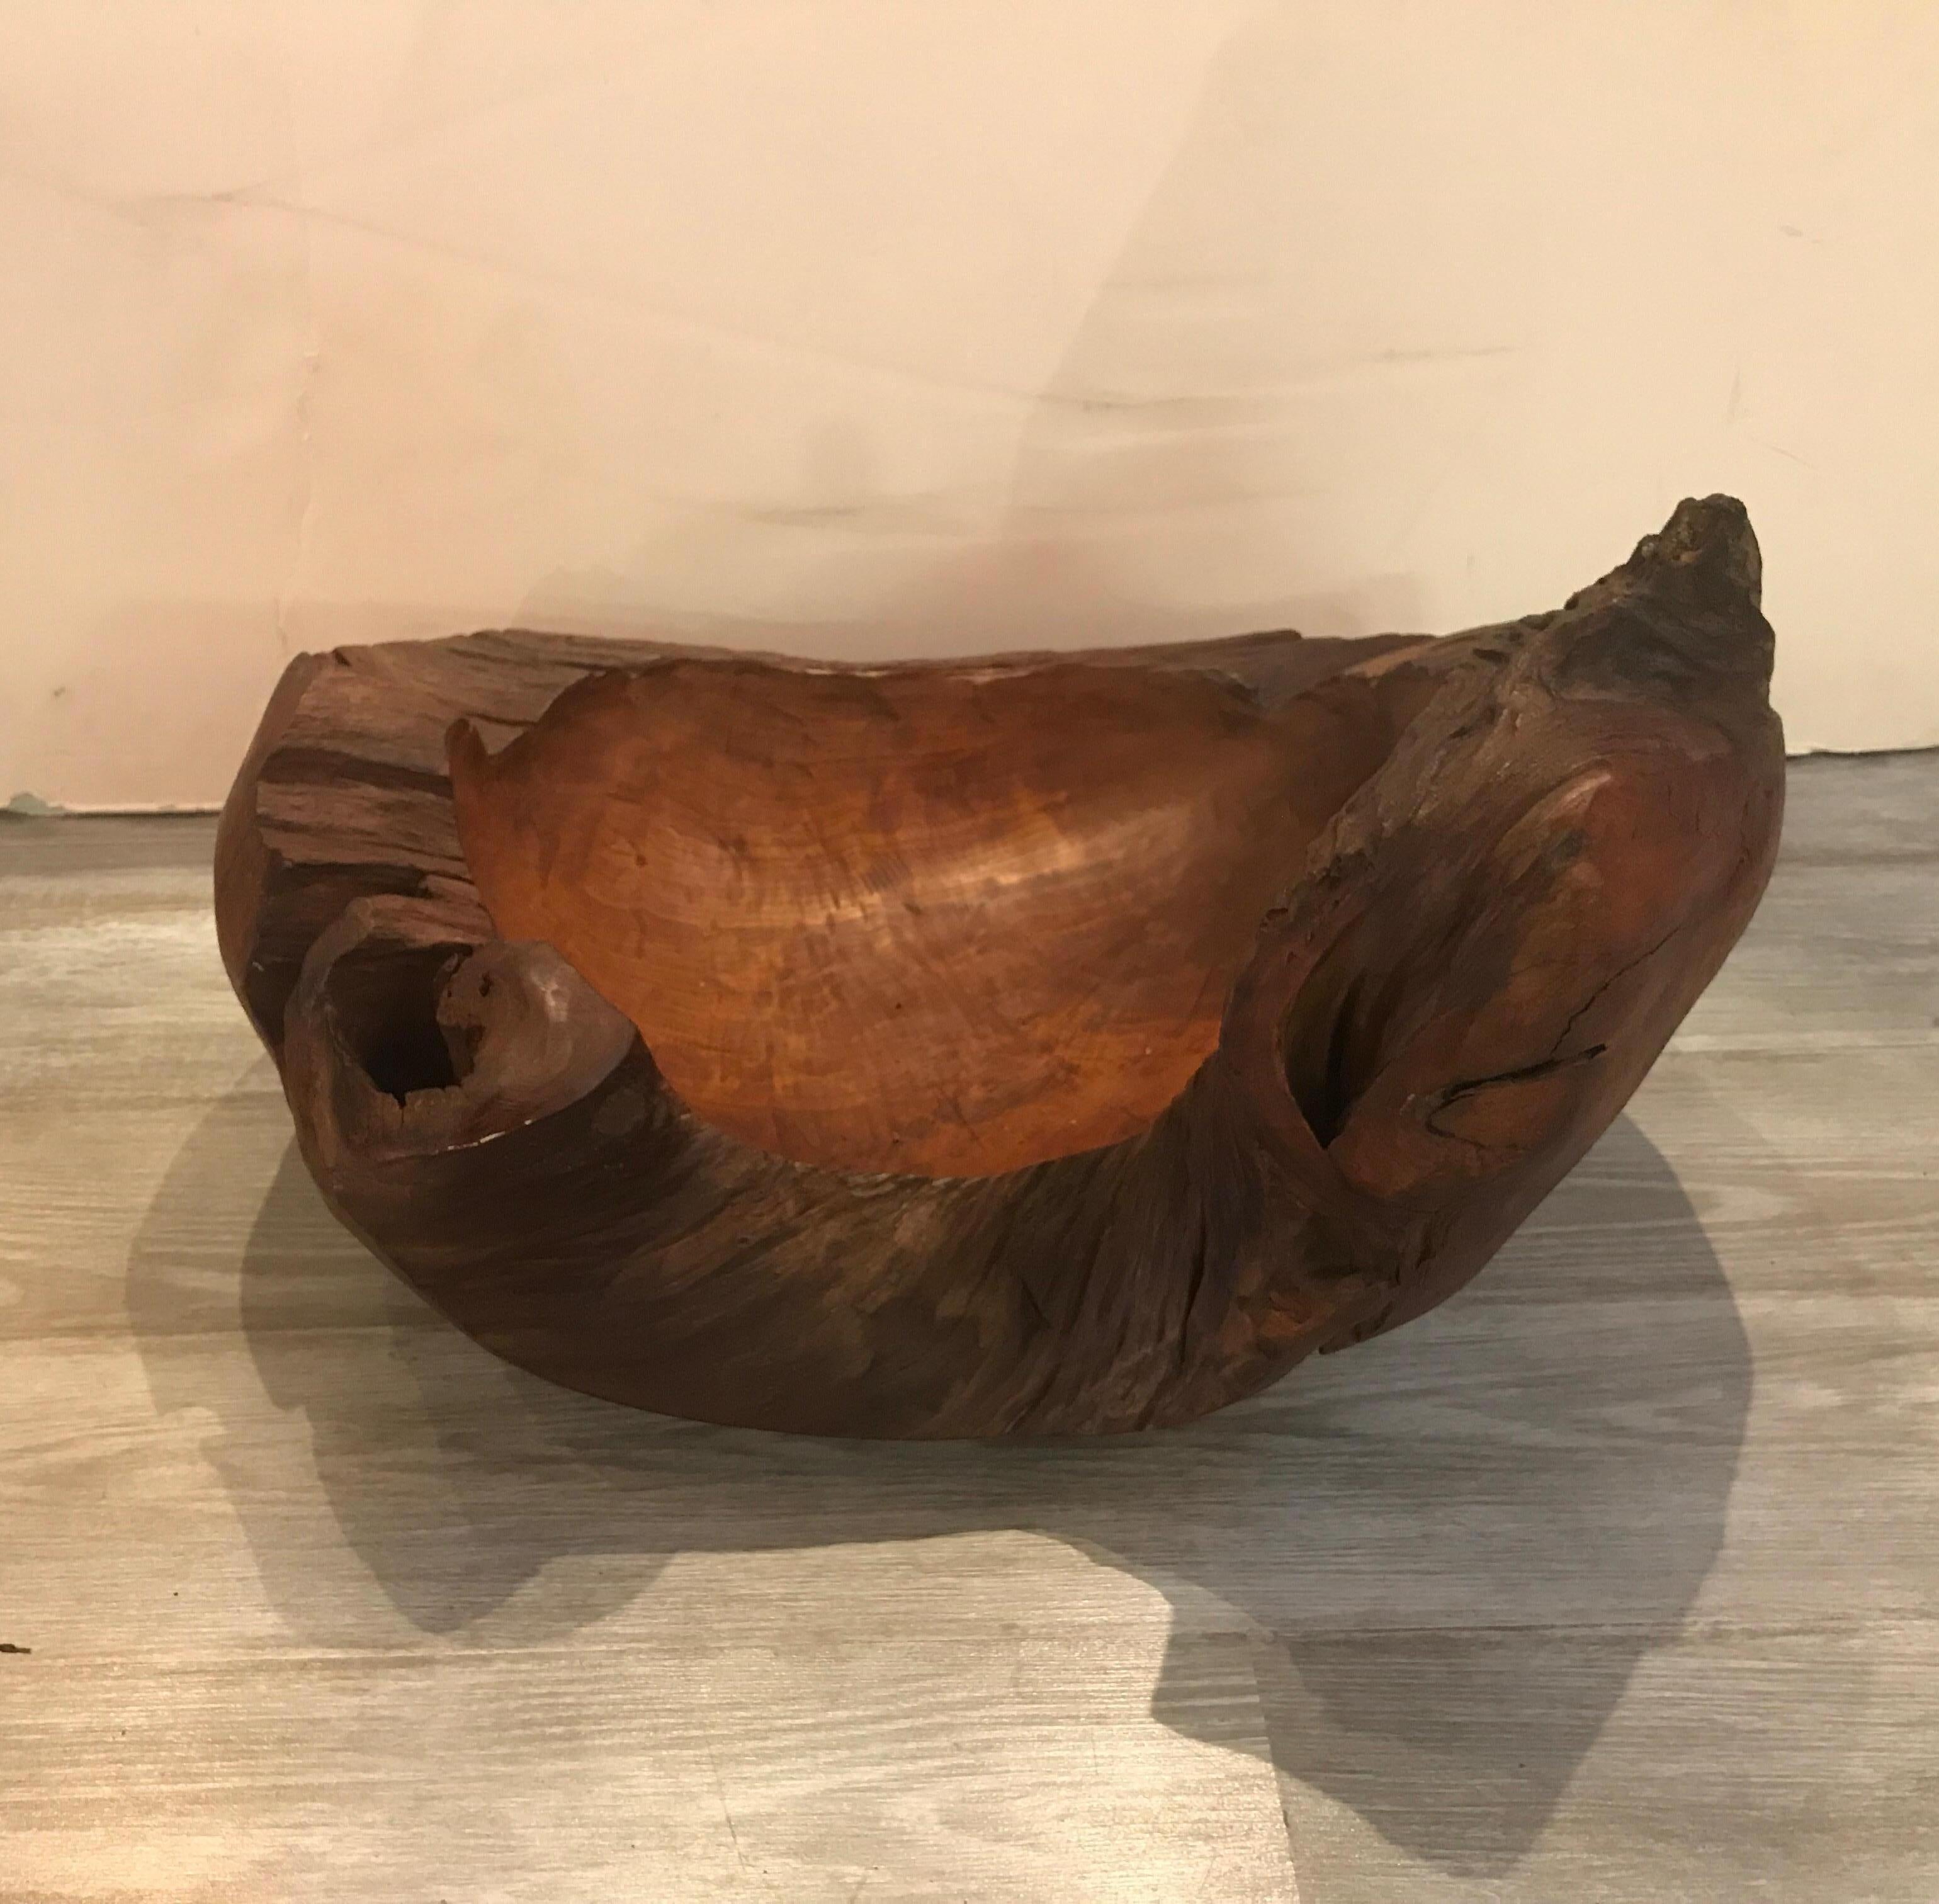 Ungewöhnliche und sehr figurative handgeschnitzte Schale, Mitte des 20. Jahrhunderts, Amerika. Diese einzigartige handgeschnitzte Schale ist aus einem einzigen großen Stück Holz gefertigt. Sehr erdig und organisch.